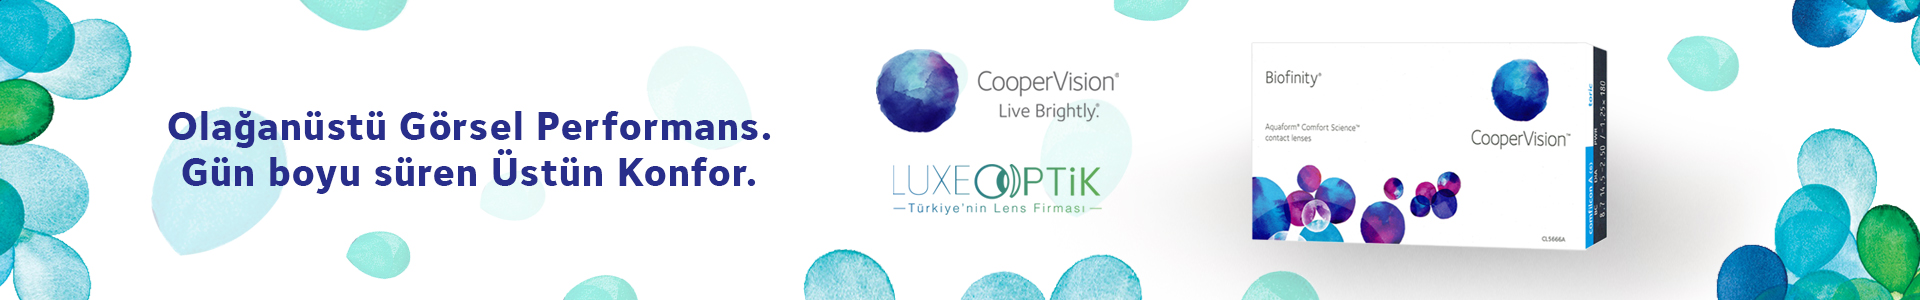 Cooper Vision Numaralı Lens | Çeşitleri ve Fiyatları